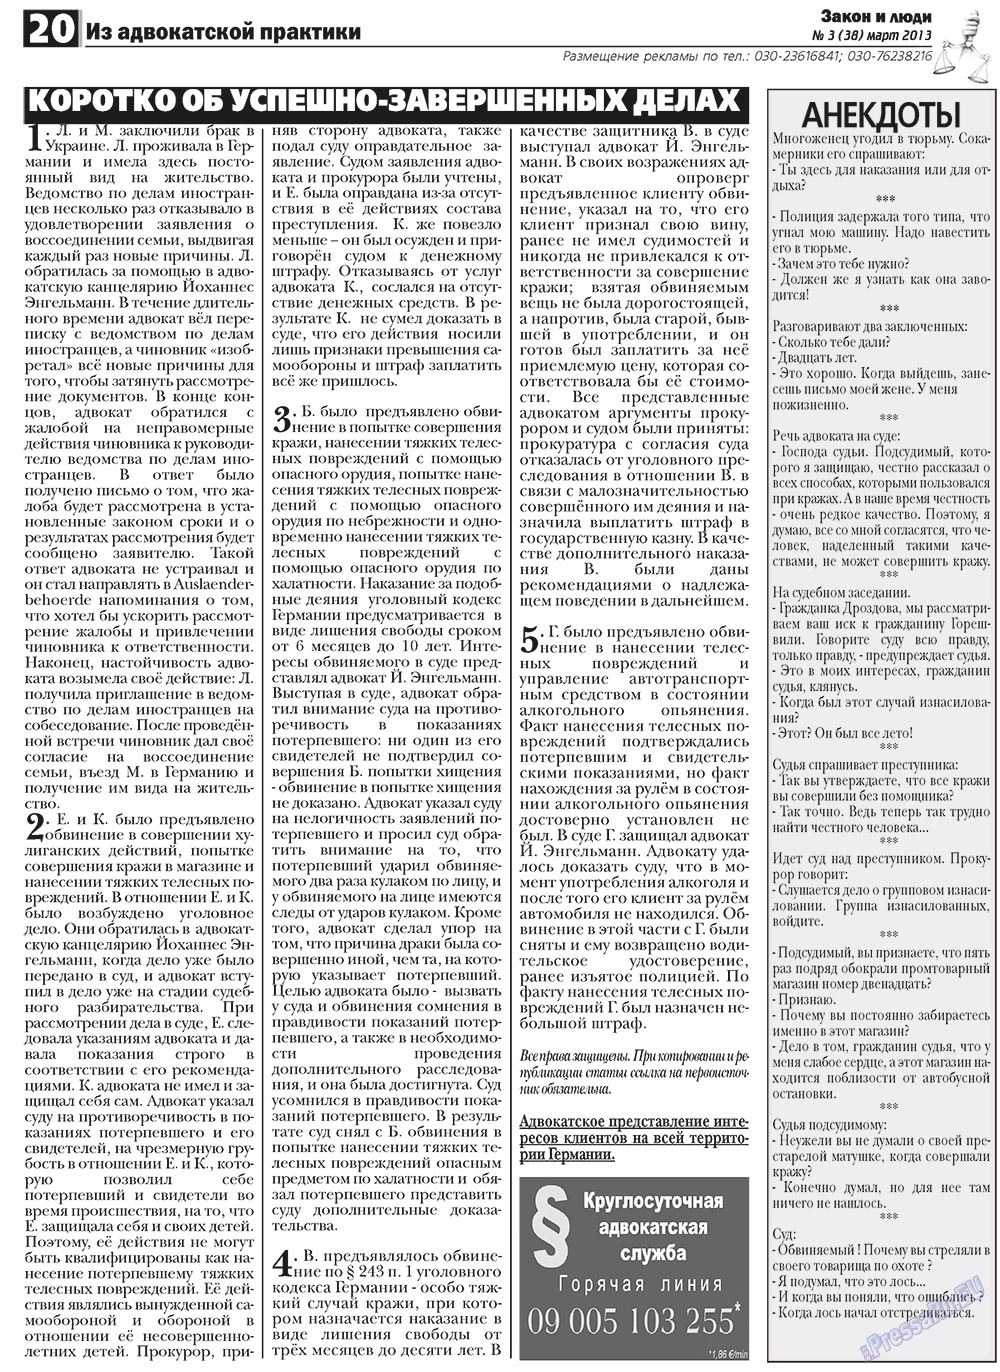 Закон и люди, газета. 2013 №3 стр.20